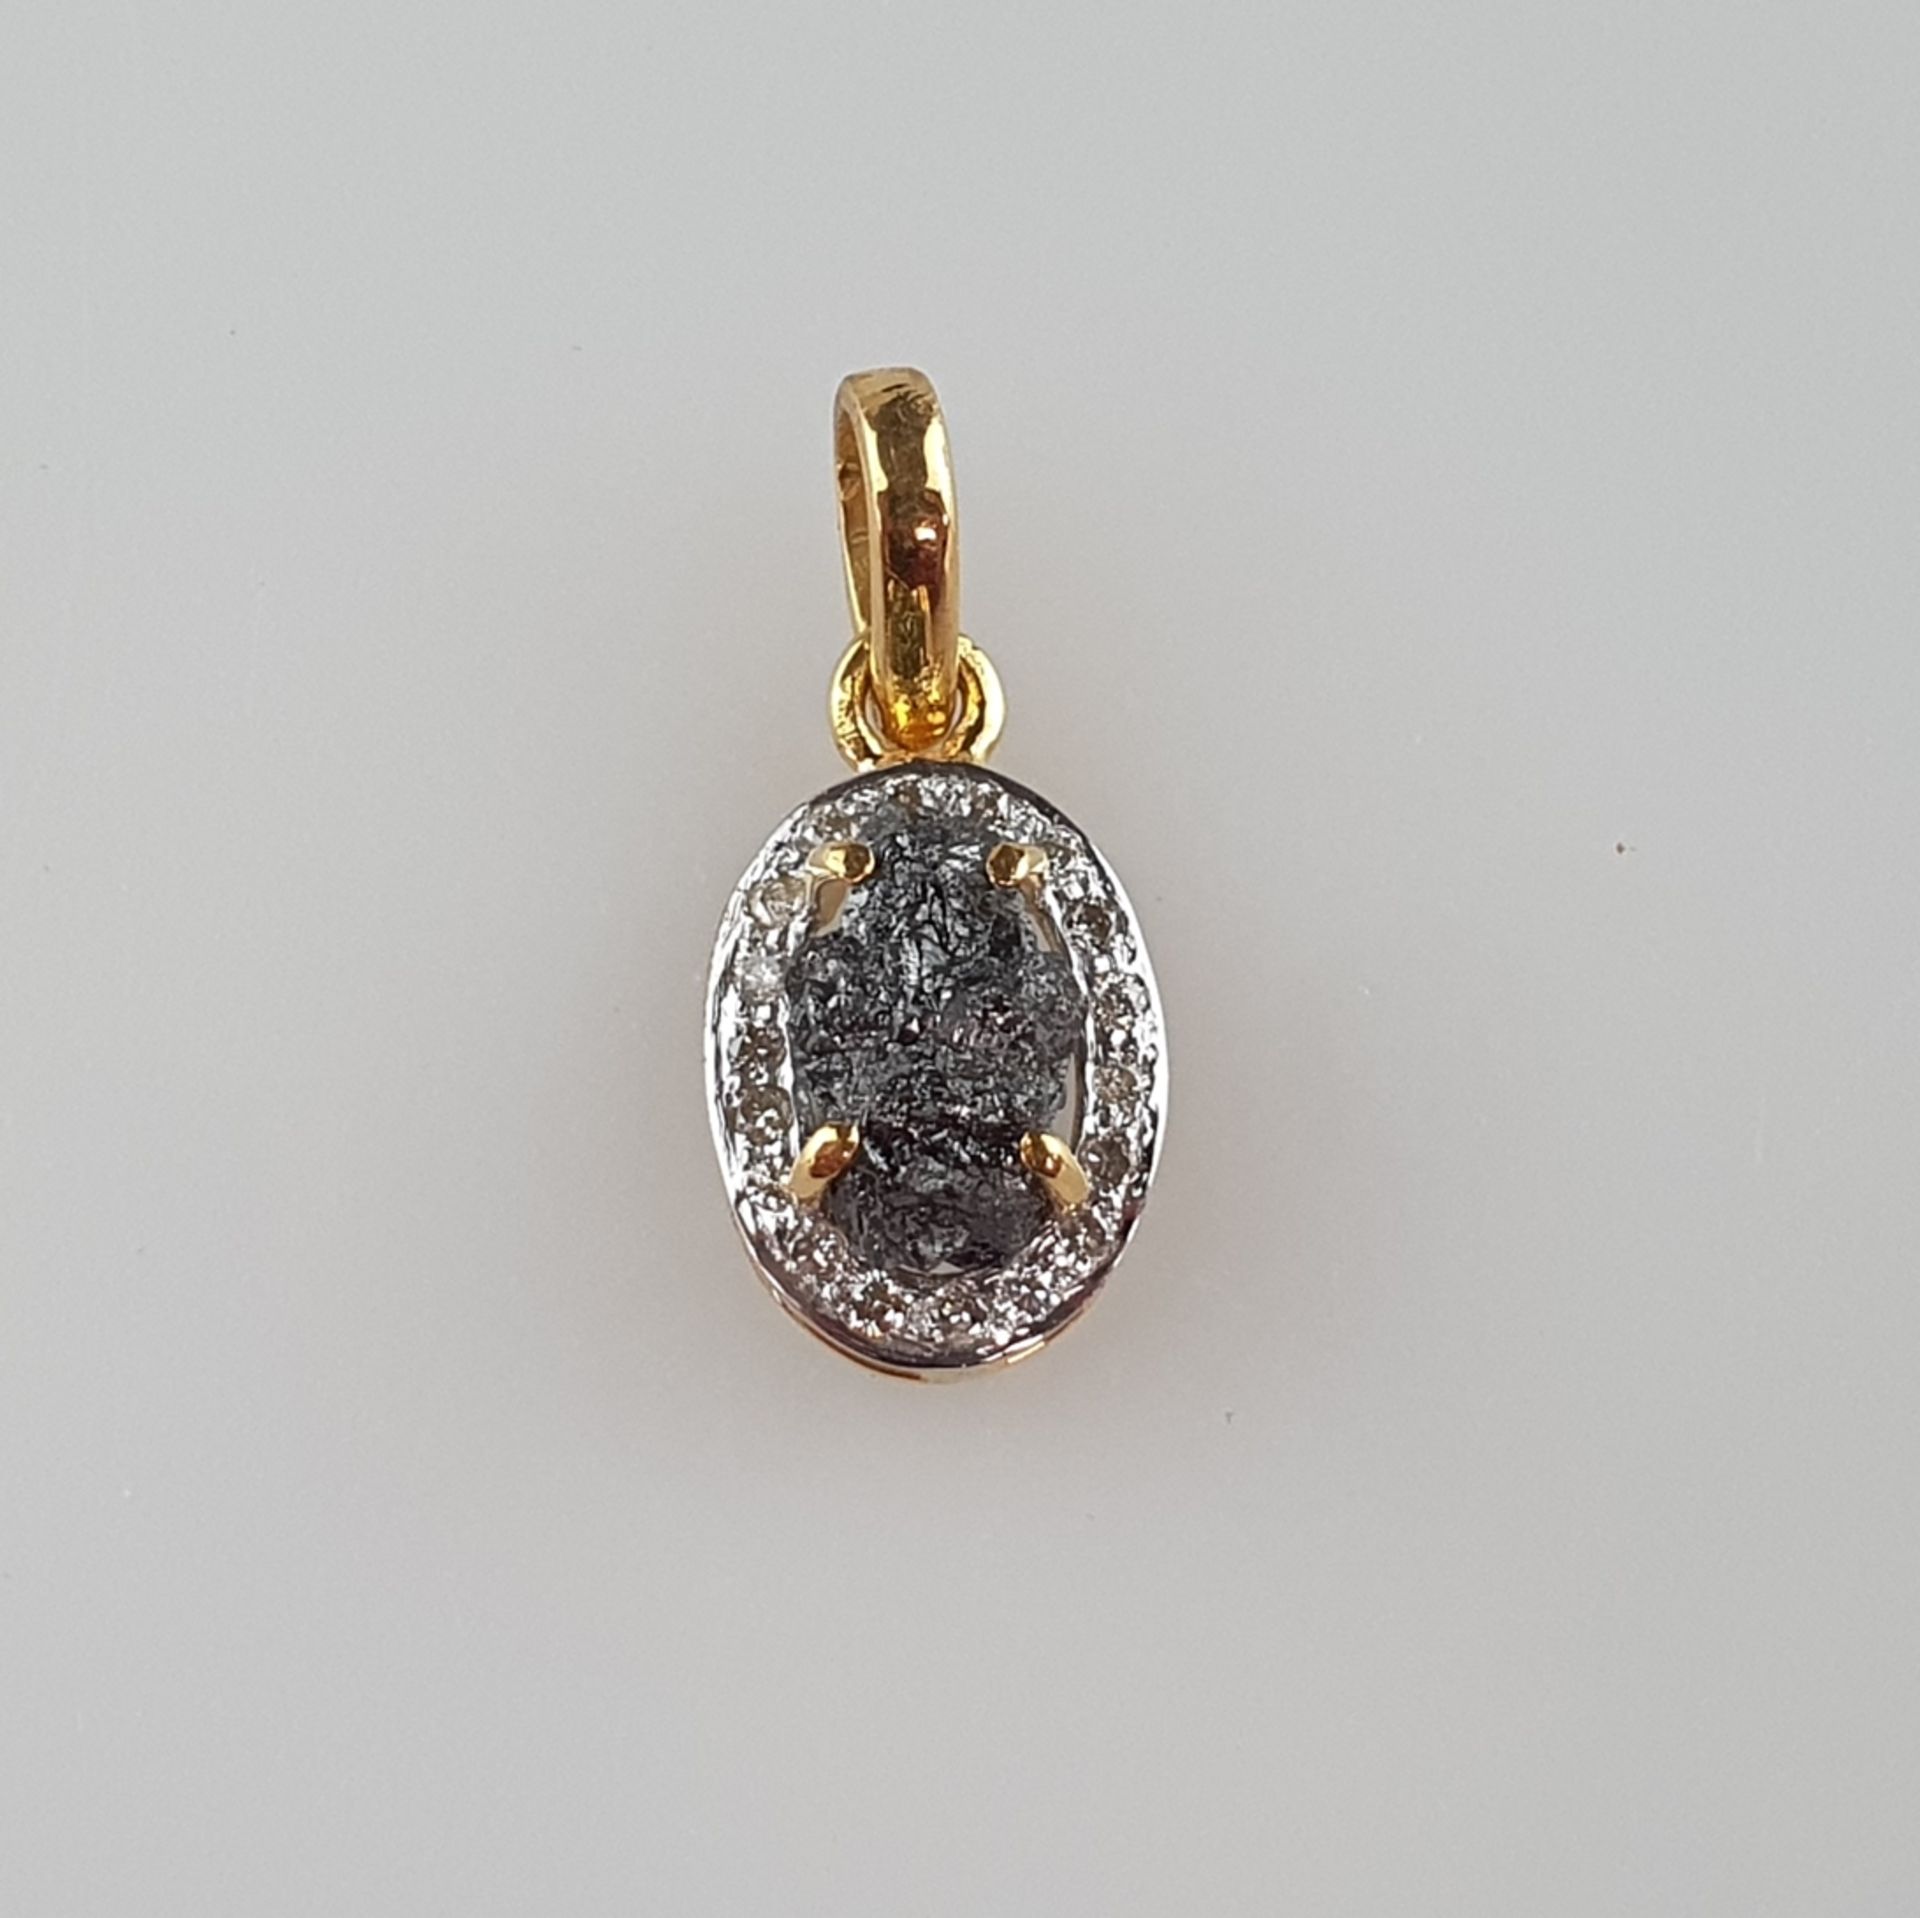 Rohdiamant-Goldanhänger - 14Kt.-Gelbgold 585/000, gestempelt, Gewicht/Farbe Rohdiamant 4,11 ct./bra